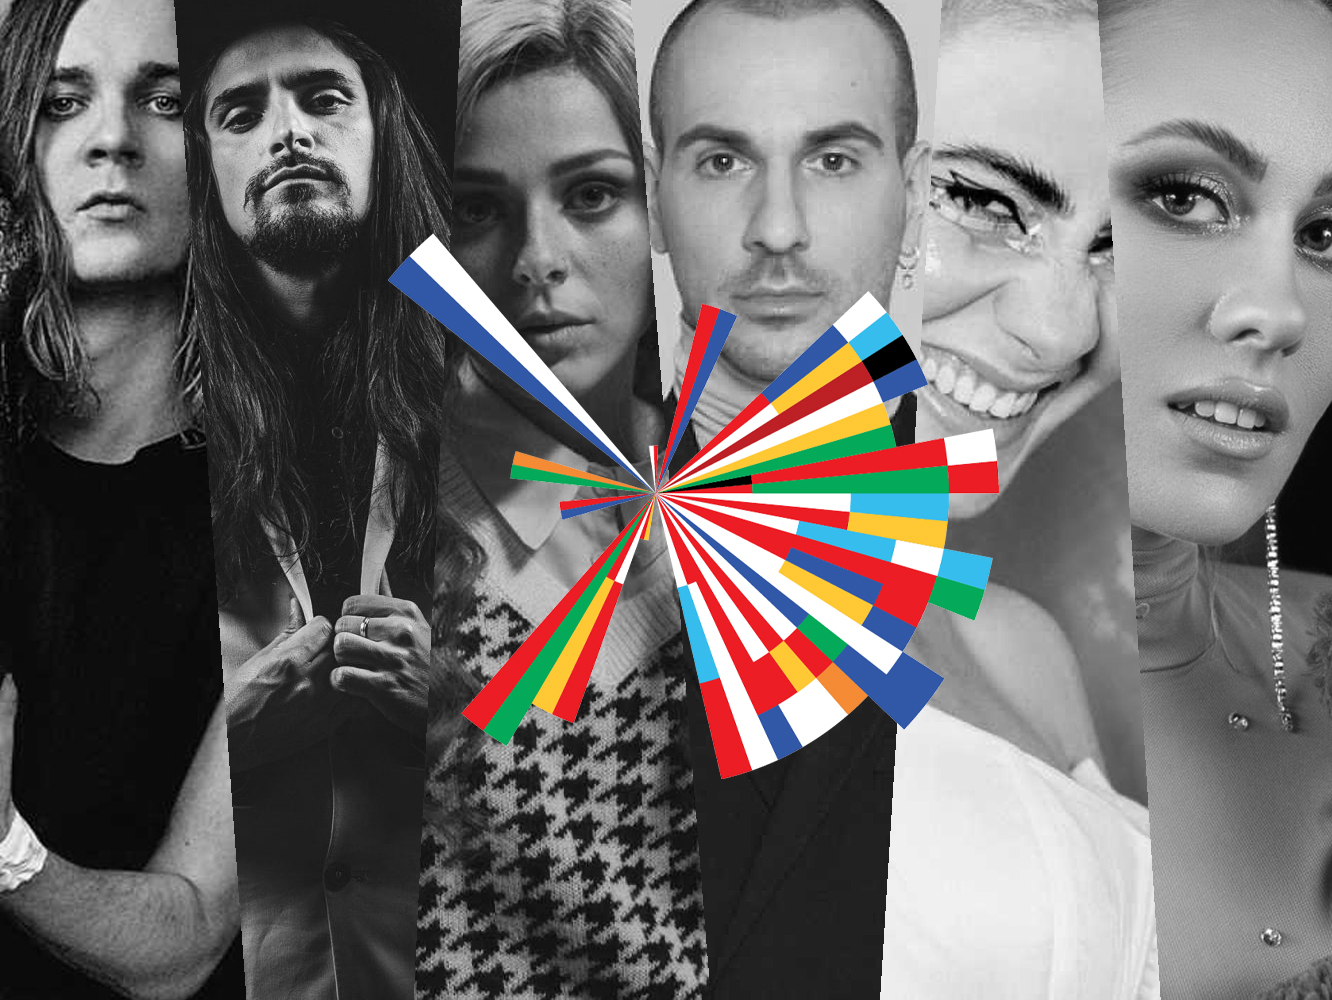 Las canciones de Eurovisión 2021 (IV) Finlandia, Portugal, Bulgaria, Lituania, Australia y Croacia